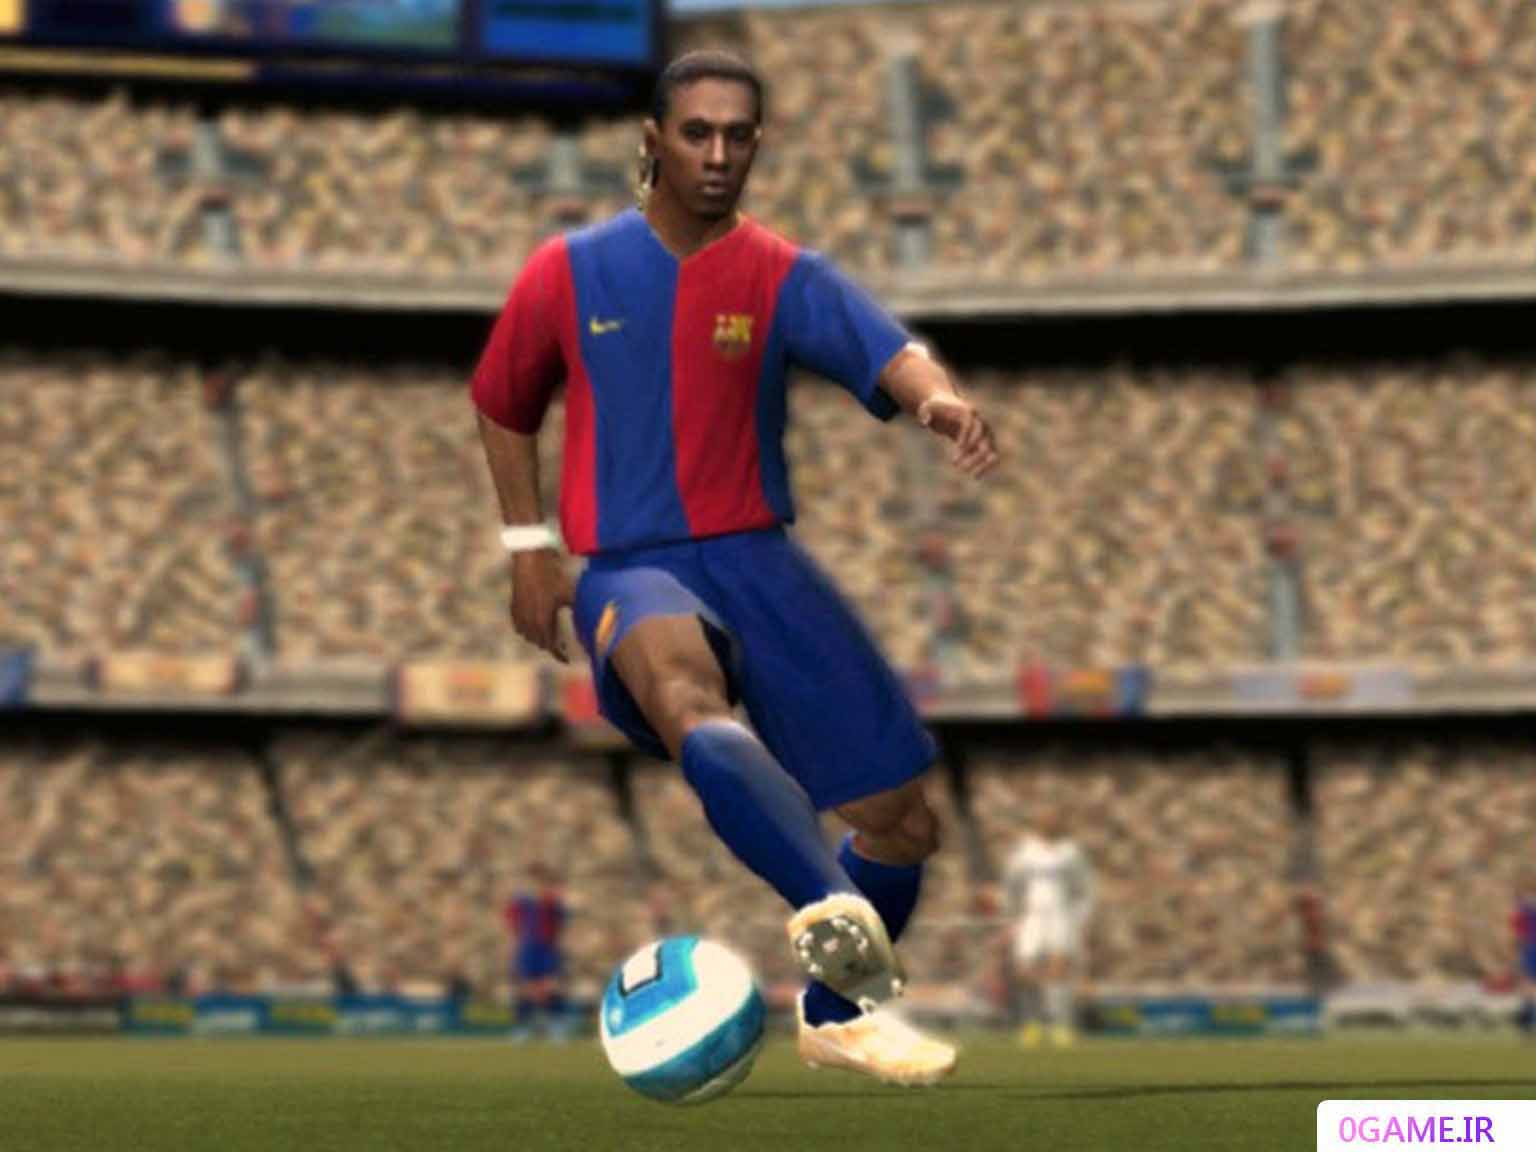 دانلود بازی فیفا 2007 (FIFA 07) نسخه کامل برای کامپیوتر